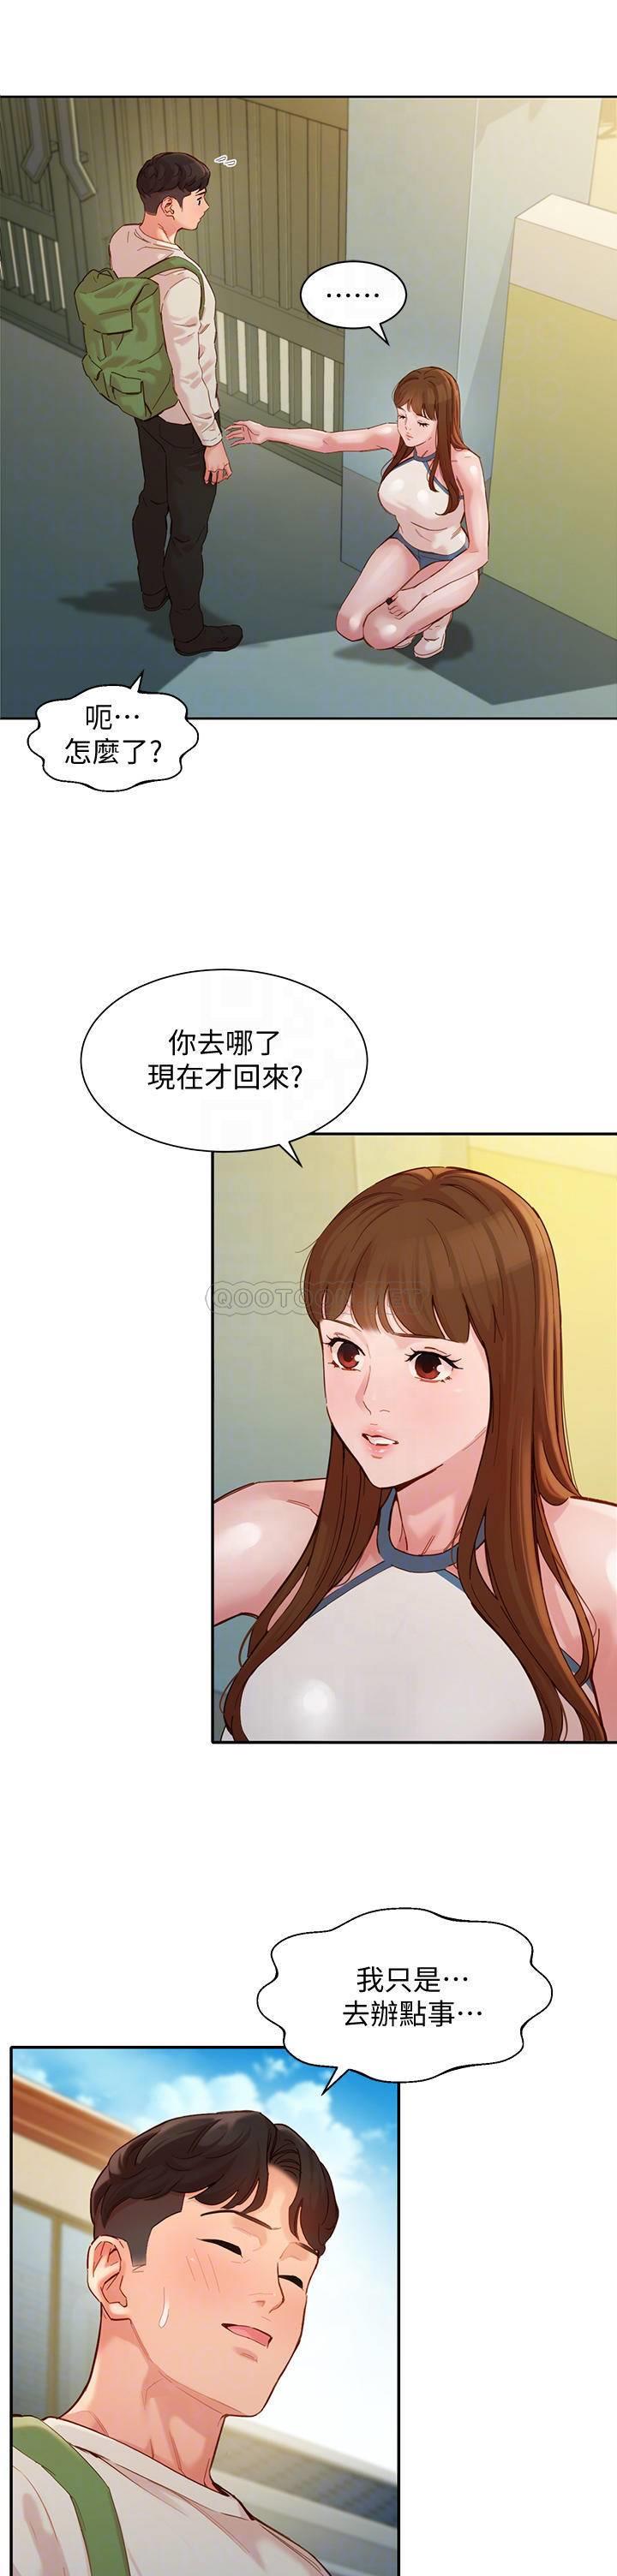 韩国污漫画 女神寫真 第48话炮友还是恋人？ 12